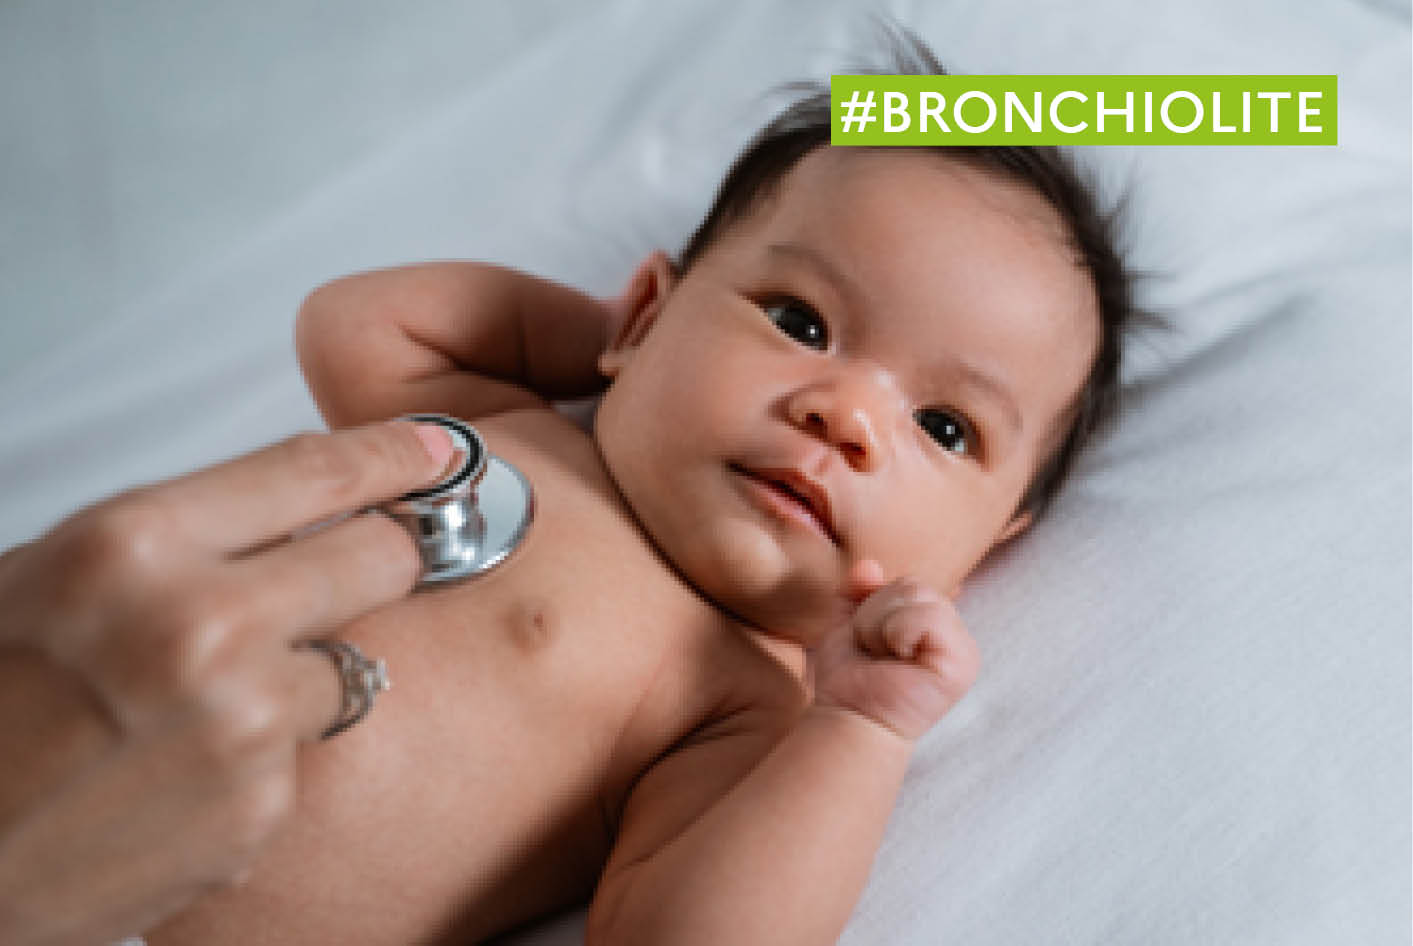 Bronchiolite bébé : l'épidémie se propage, 10 régions touchées